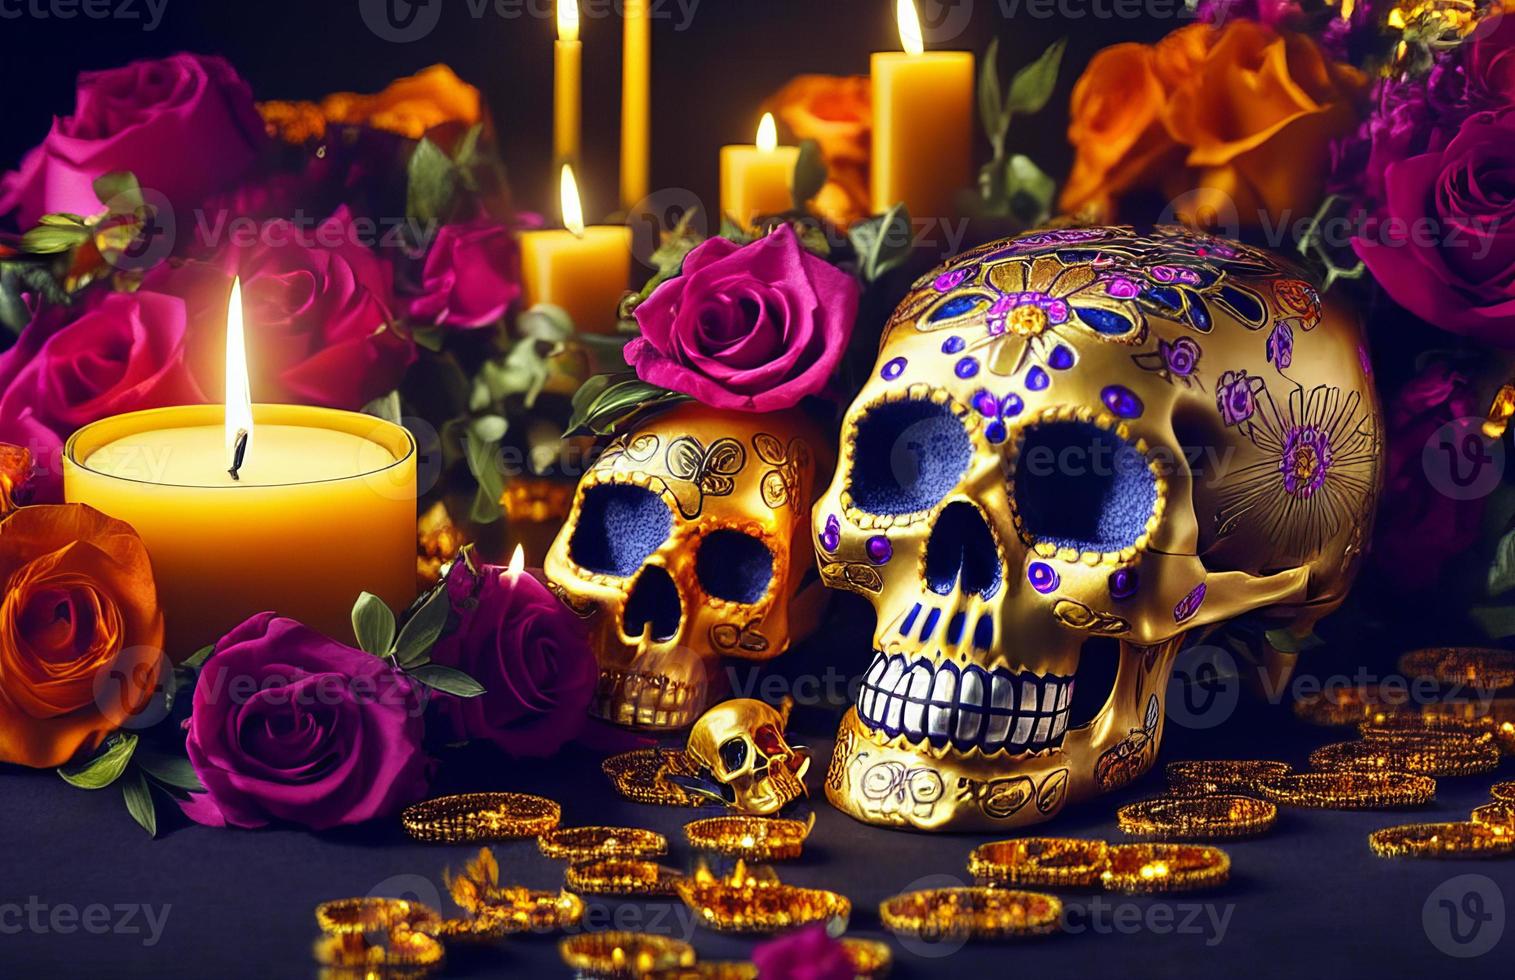 guld skalle för dia de los muertos - dag av de död- med ljus och blommor foto